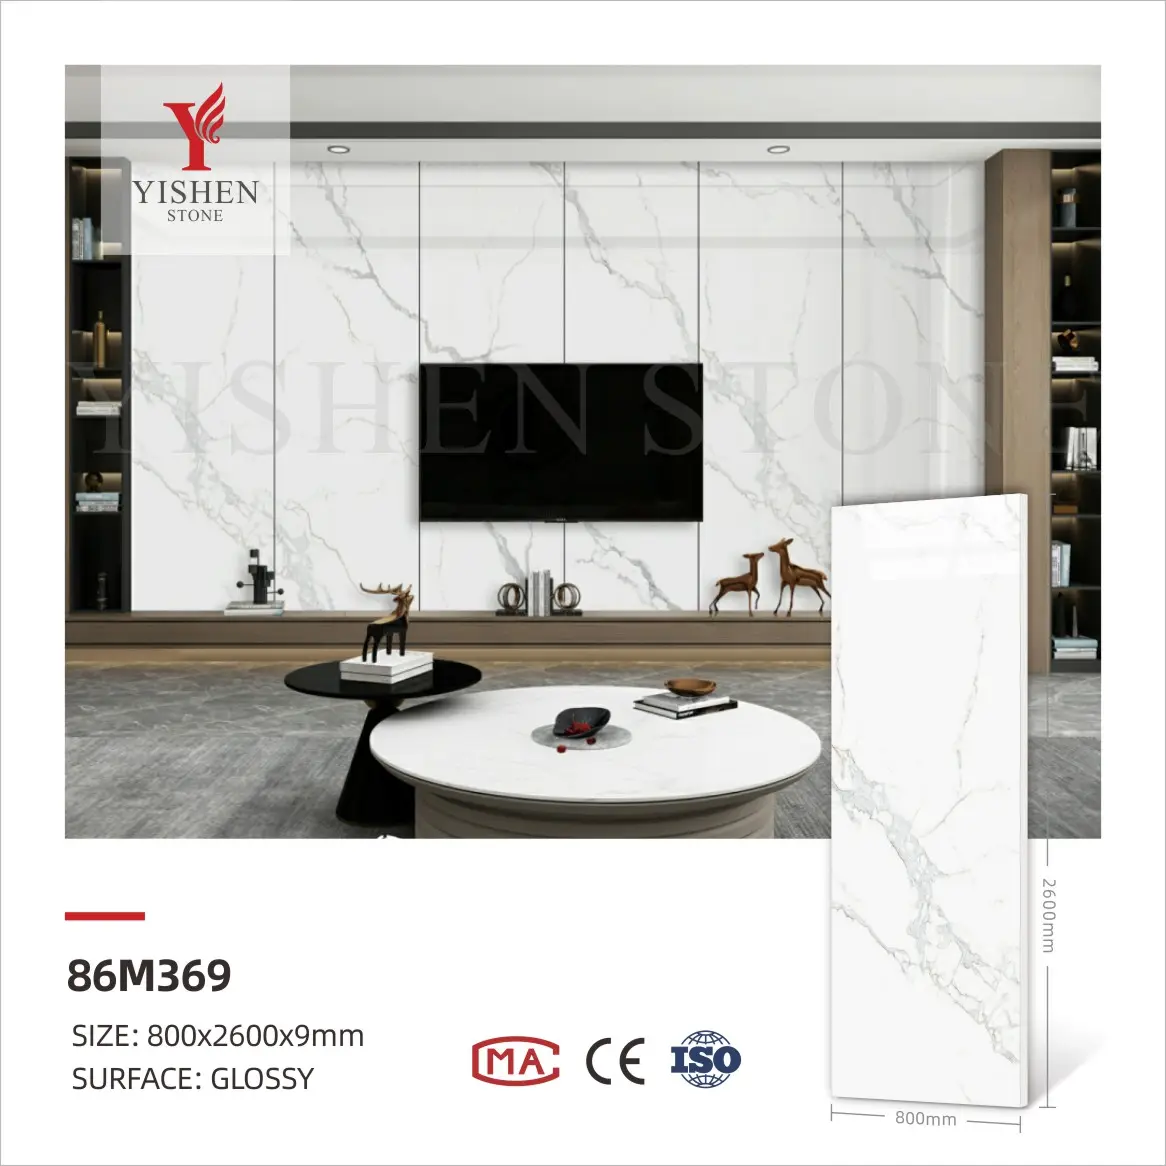 800x2600 gres porcellanato marmo pietra sinterizzata lastra da parete in gres porcellanato marmo lucido lastra testurizzata piastrella in pietra sinterizzata